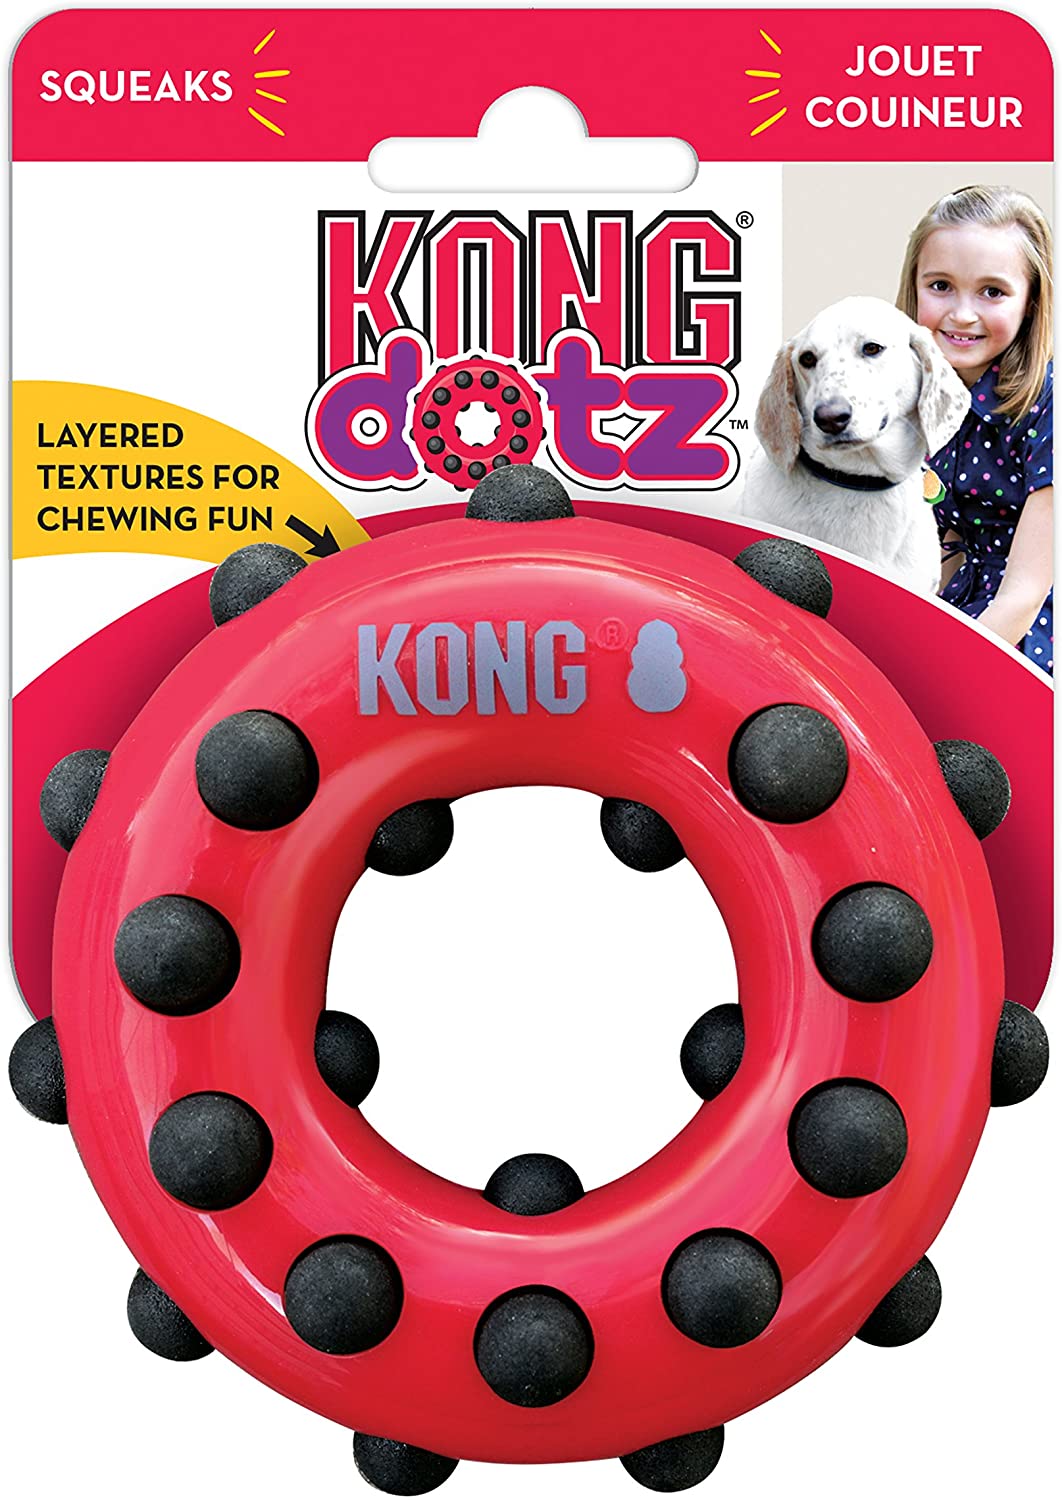  KONG - Dotz Circle - Juguete mordedor para perros - Raza pequeña 